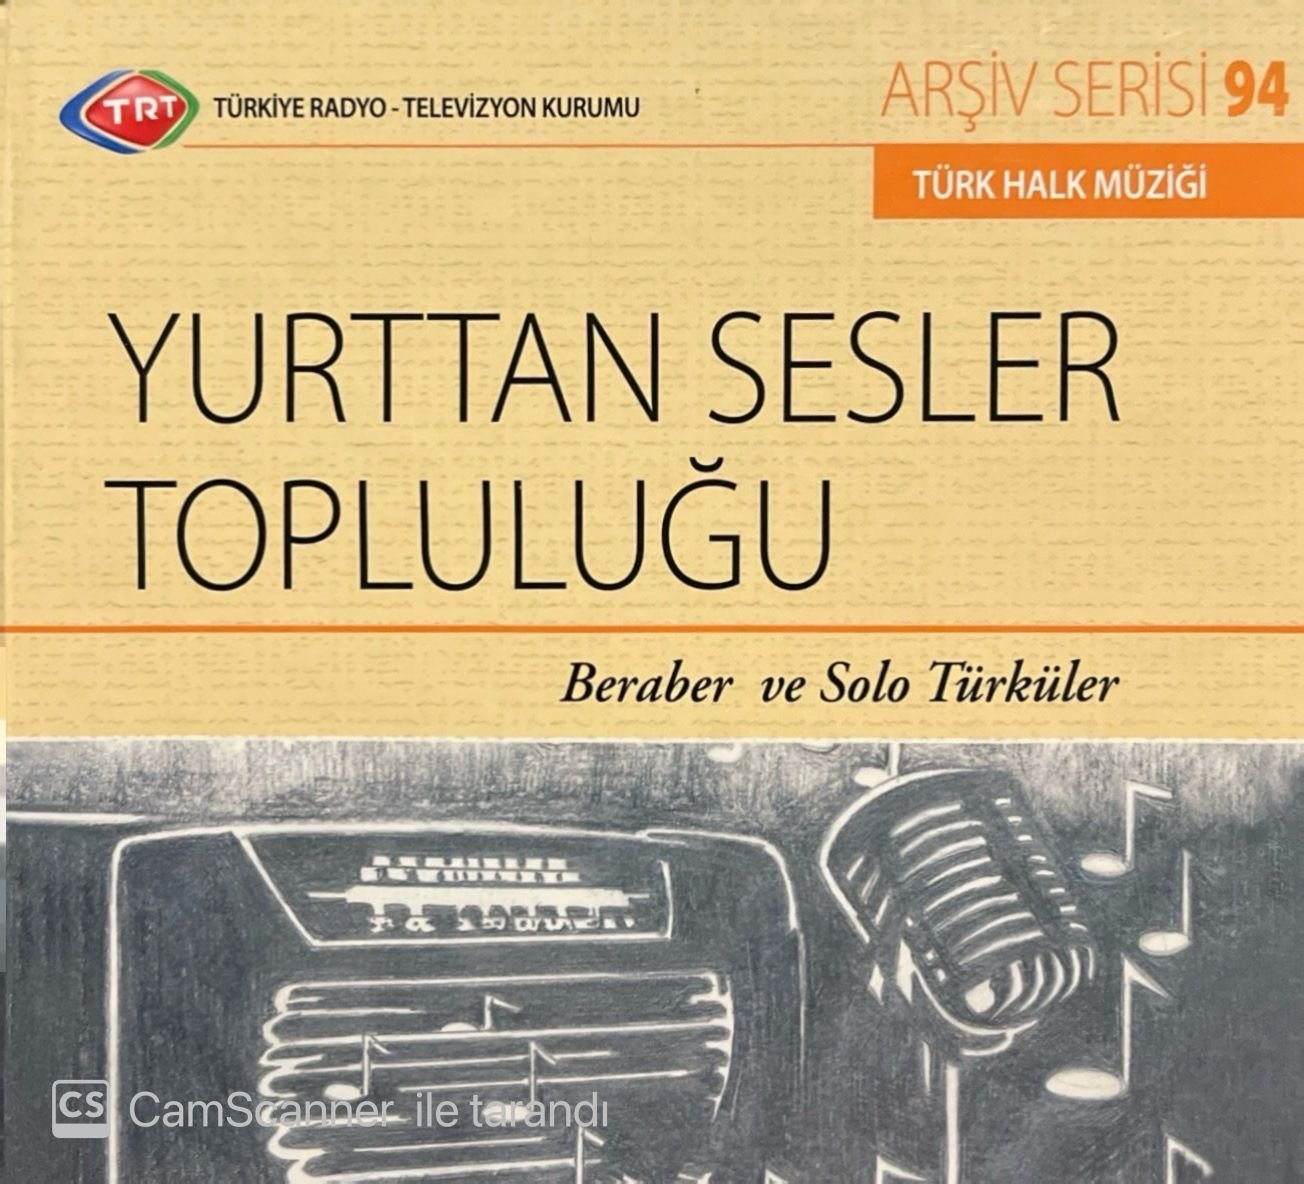 TRT Arşiv Serisi 94 Yurttan Sesler Topluluğu Beraber ve Solo Türküler CD